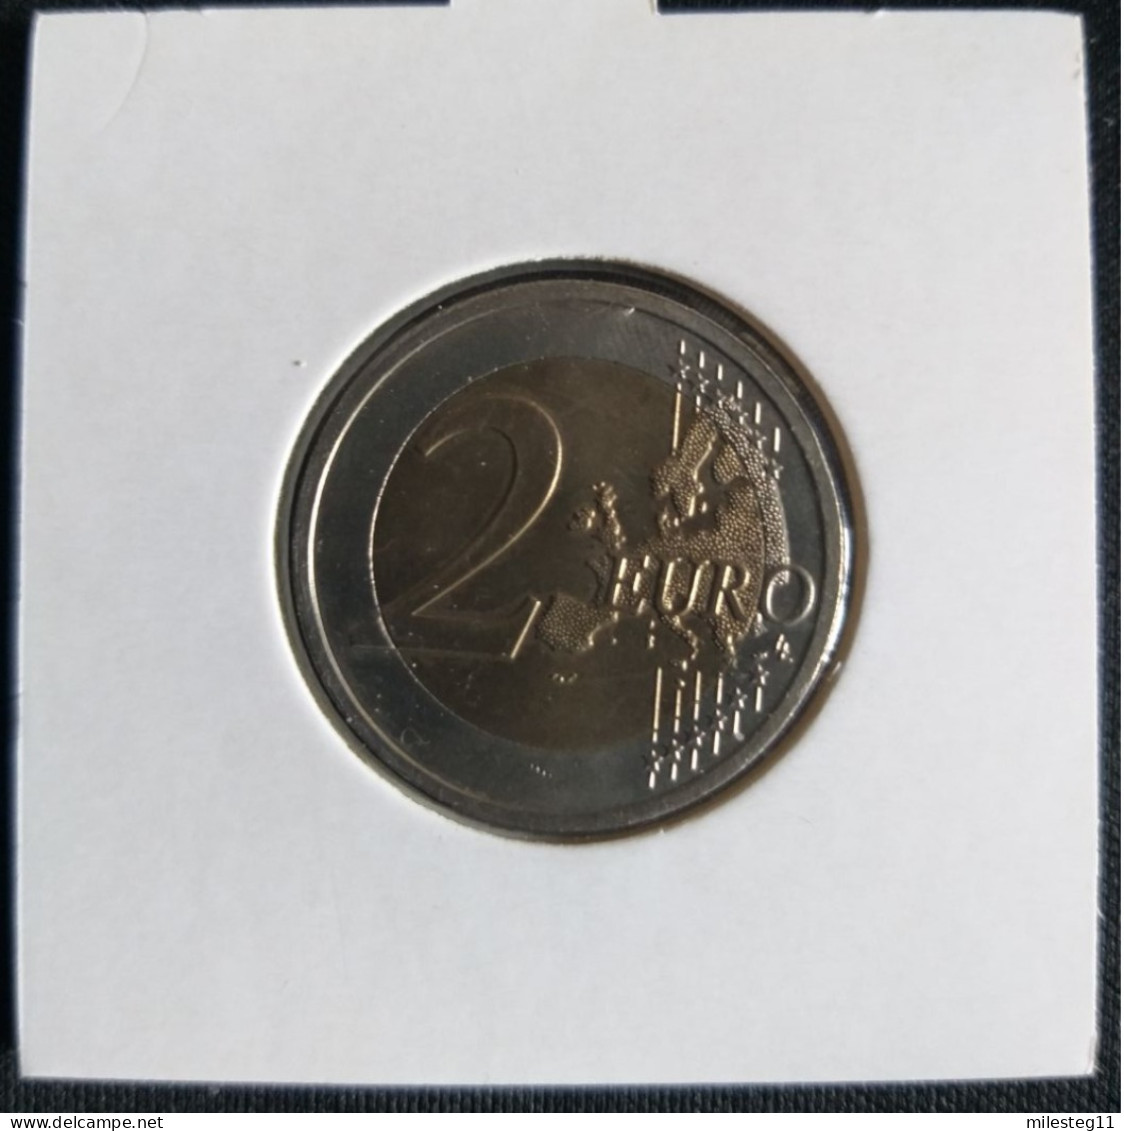 Belgique 2 Euro Commémorative De 2009 (10e Anniversaire De L'Union Monétaire Et Economique) - Belgien